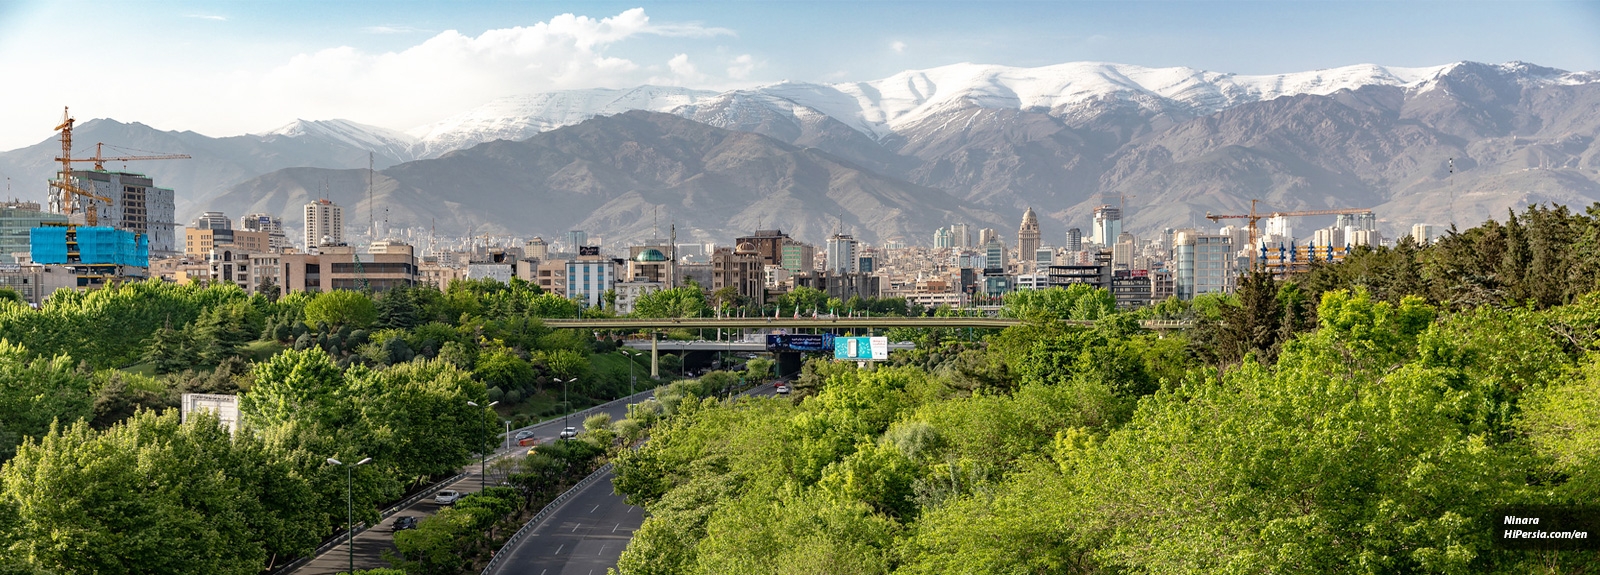 48 Hours in Tehran